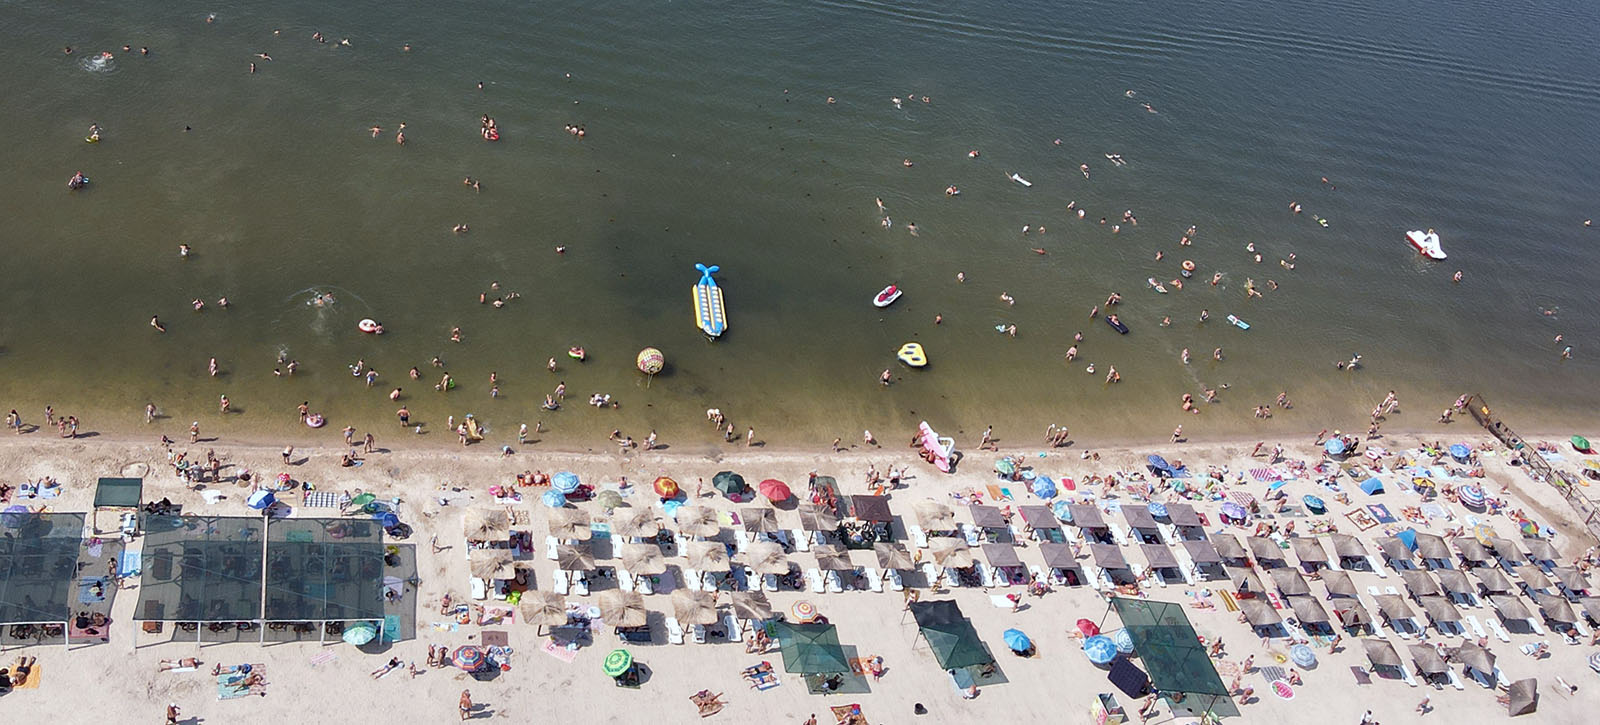 Бердянск. На фото изображен пляж на Лисках в Бердянске в разгар летнего сезона